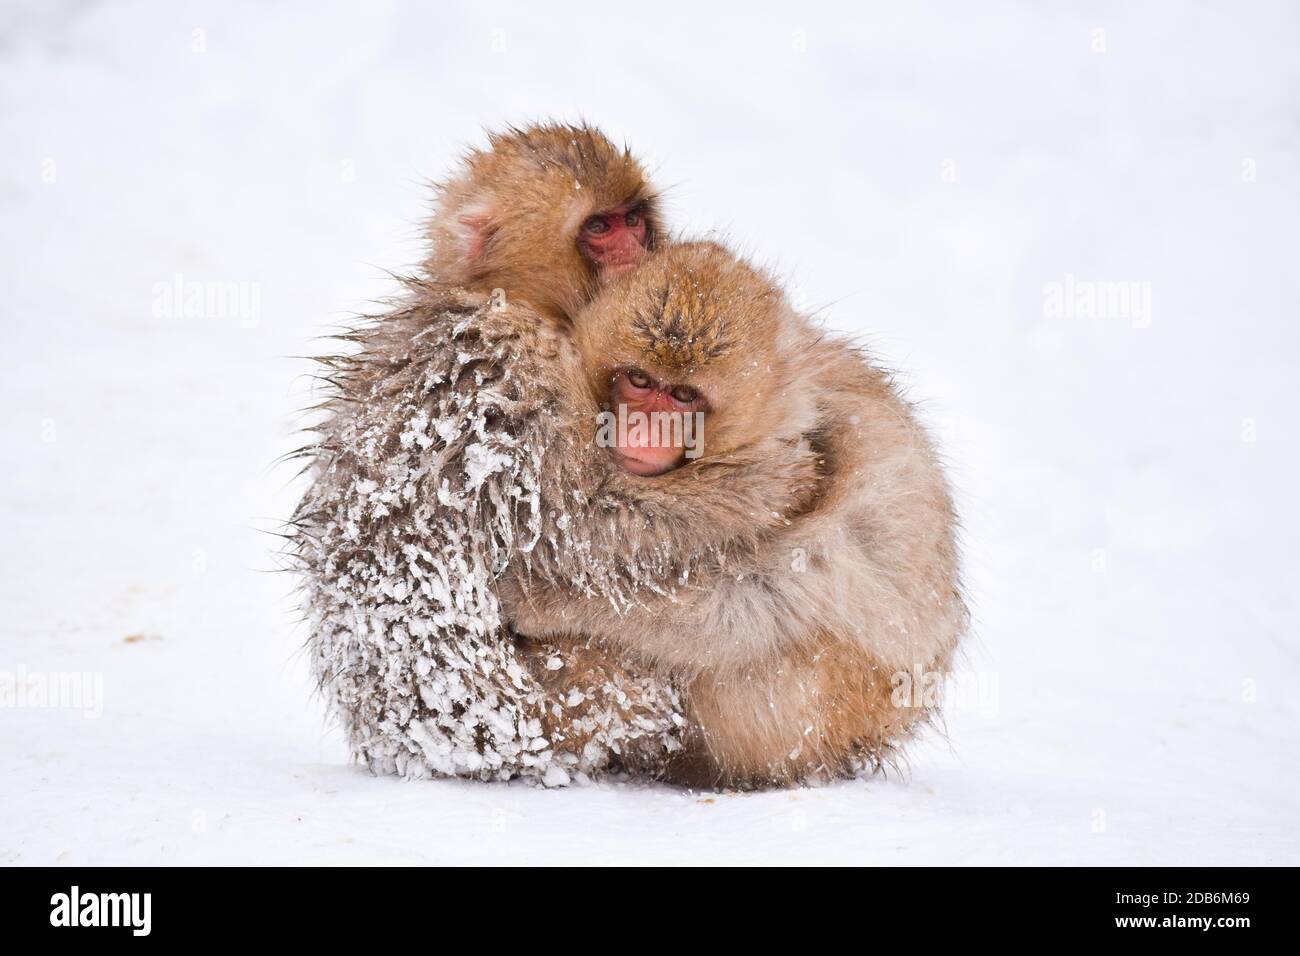 Zwei braune niedliche Baby-Schnee-Affen umarmen und schützen sich gegenseitig vor dem kalten Schnee mit Eis in ihrem Fell im Winter. Wilde Tiere, die Liebe zeigen Stockfoto